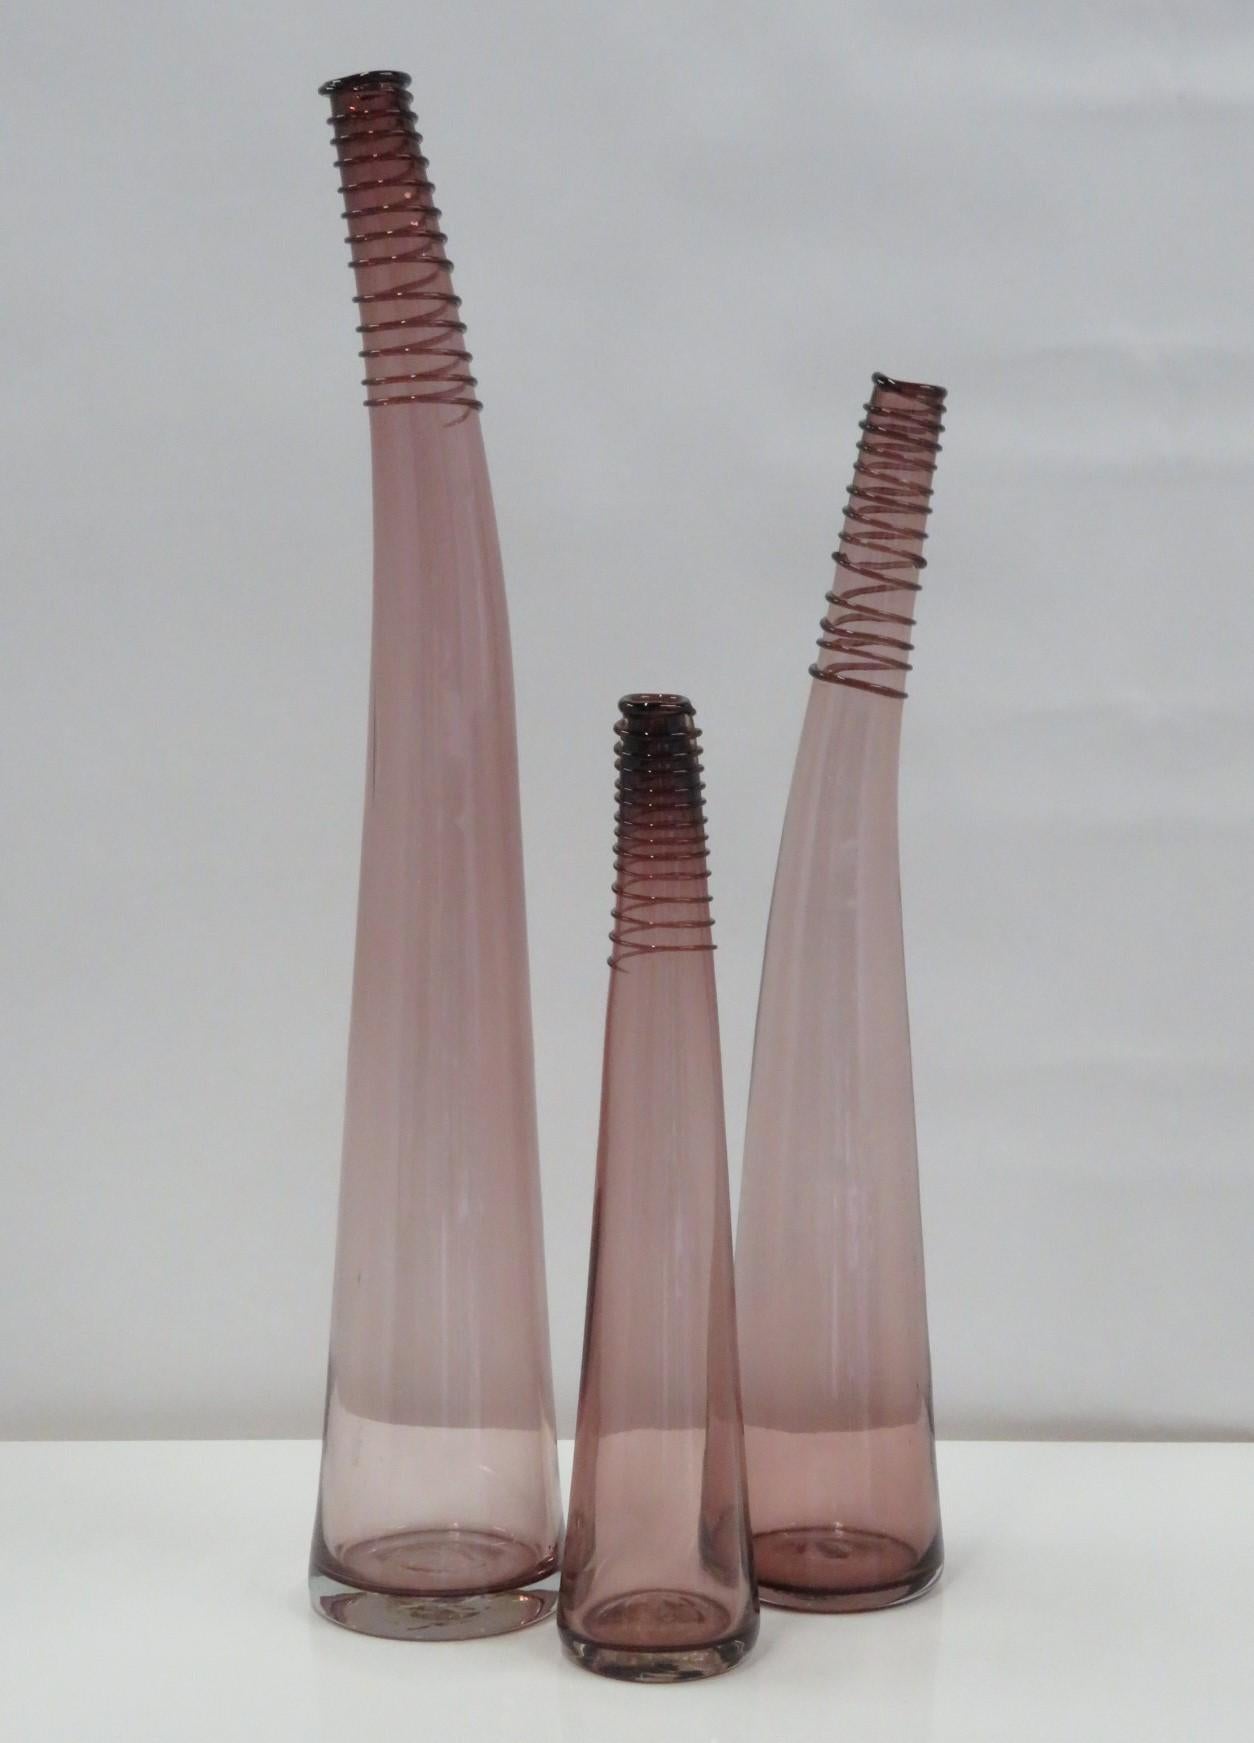 Ensemble de 3 vases à bouteille à col en spirale courbé Blenko, en trois hauteurs, créés par Don Shepherd en 1988. Ce modèle fait ses débuts dans le catalogue Blenko de 1988 et se voit attribuer le numéro 8827 l/m/s selon la hauteur du navire.